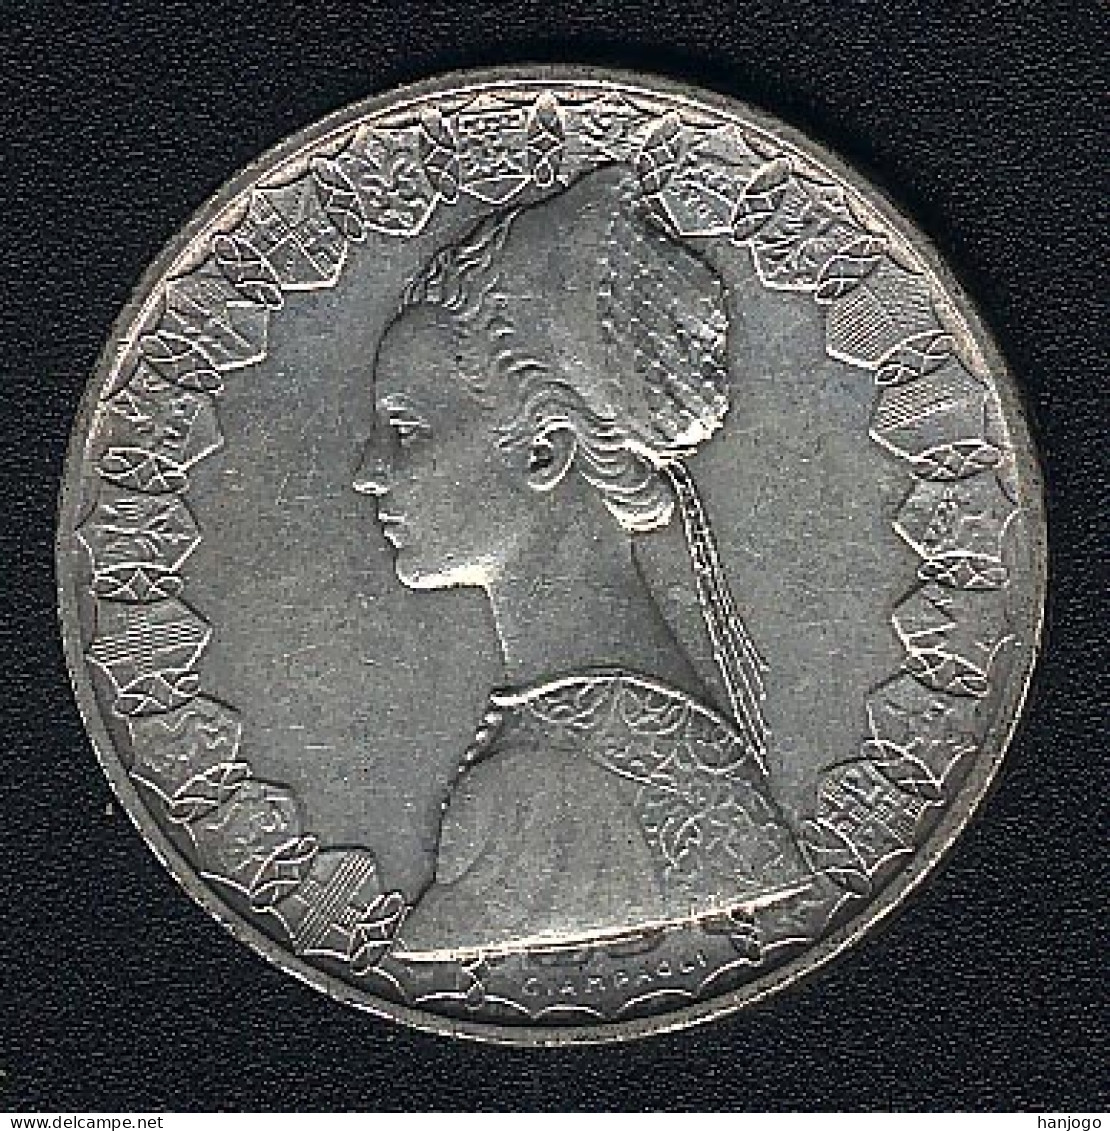 Italien, 500 Lire 1961, Silber, XF - 500 Liras